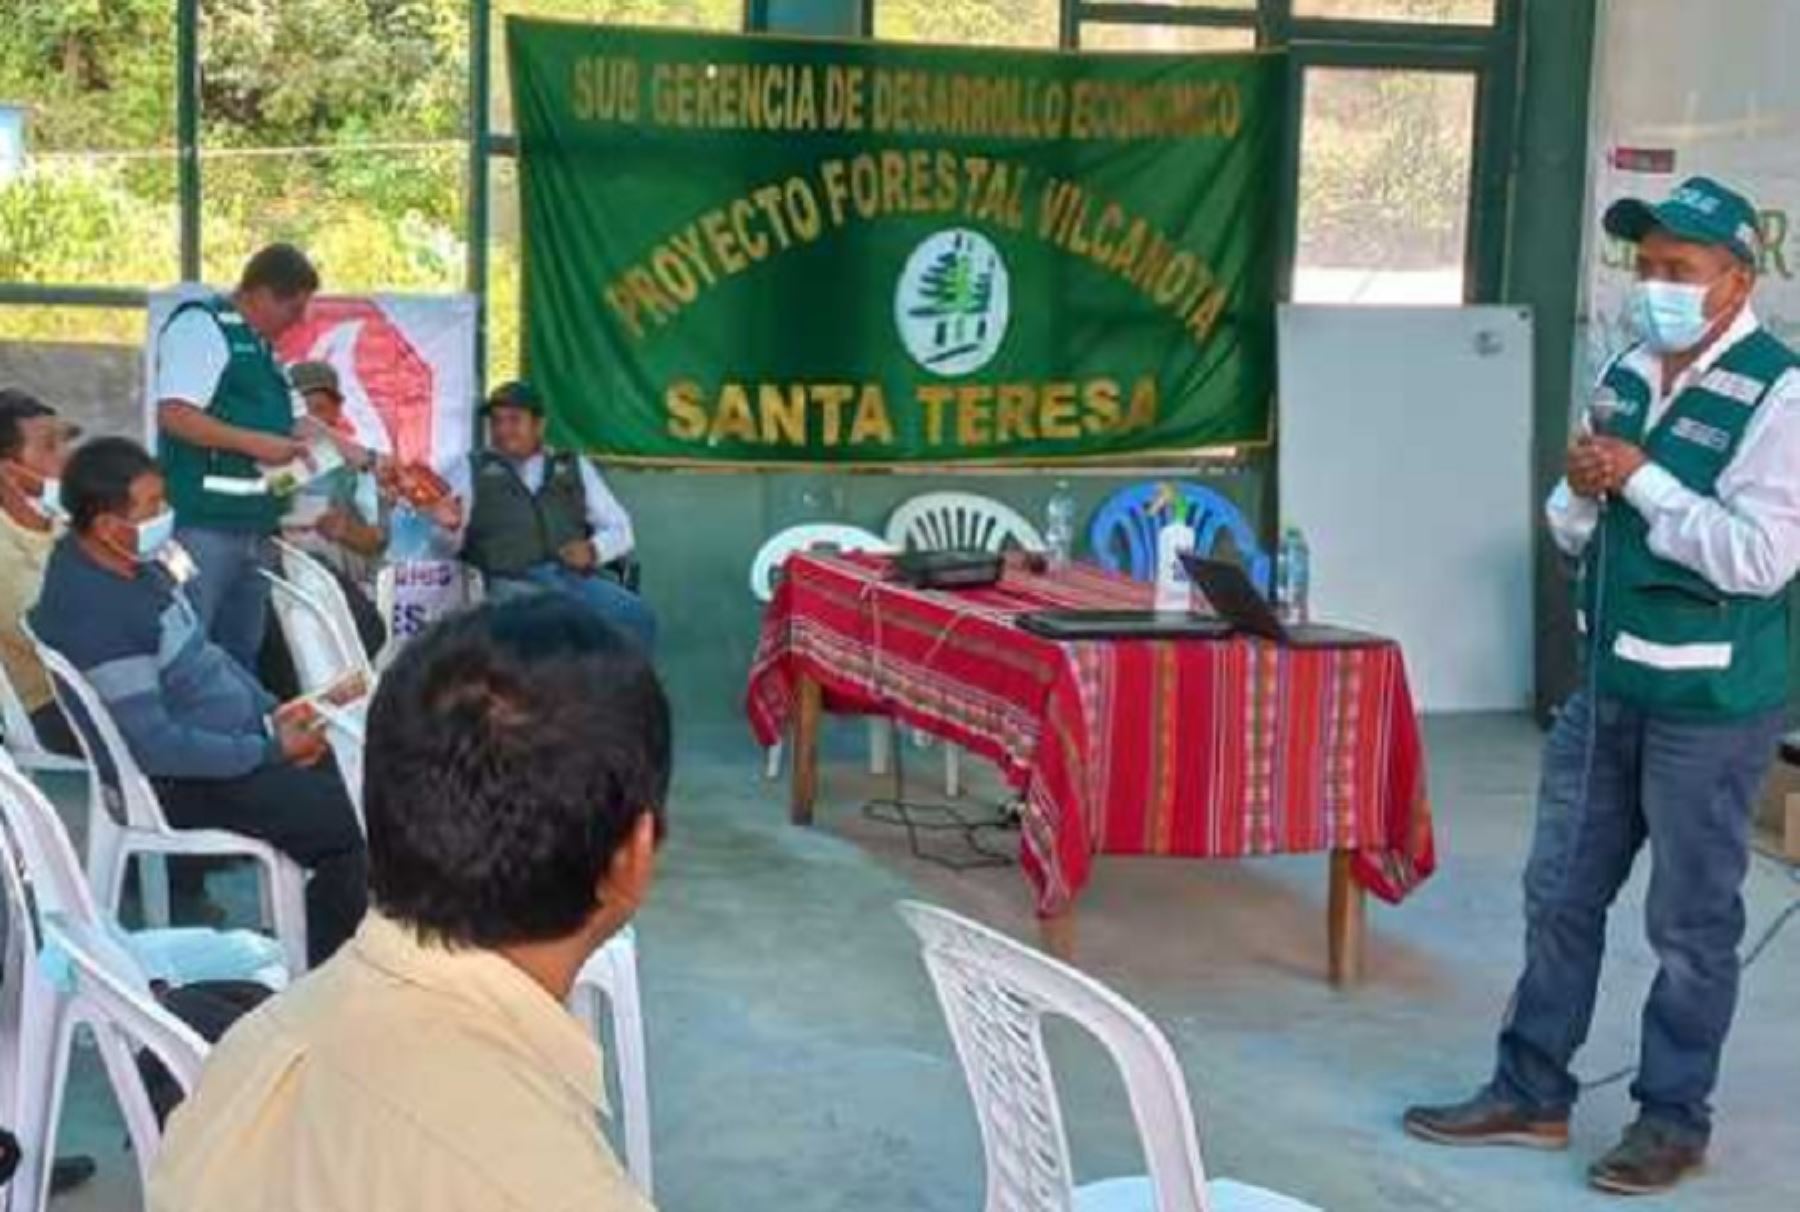 El Servicio Nacional Forestal y de Fauna Silvestre (Serfor) brindó una charla informativa de sensibilización en el sector Ccochapampa, ubicado en el distrito de Santa Teresa, provincia de La Convención, región Cusco, para promover el aprovechamiento sostenible de los recursos forestales de la zona.